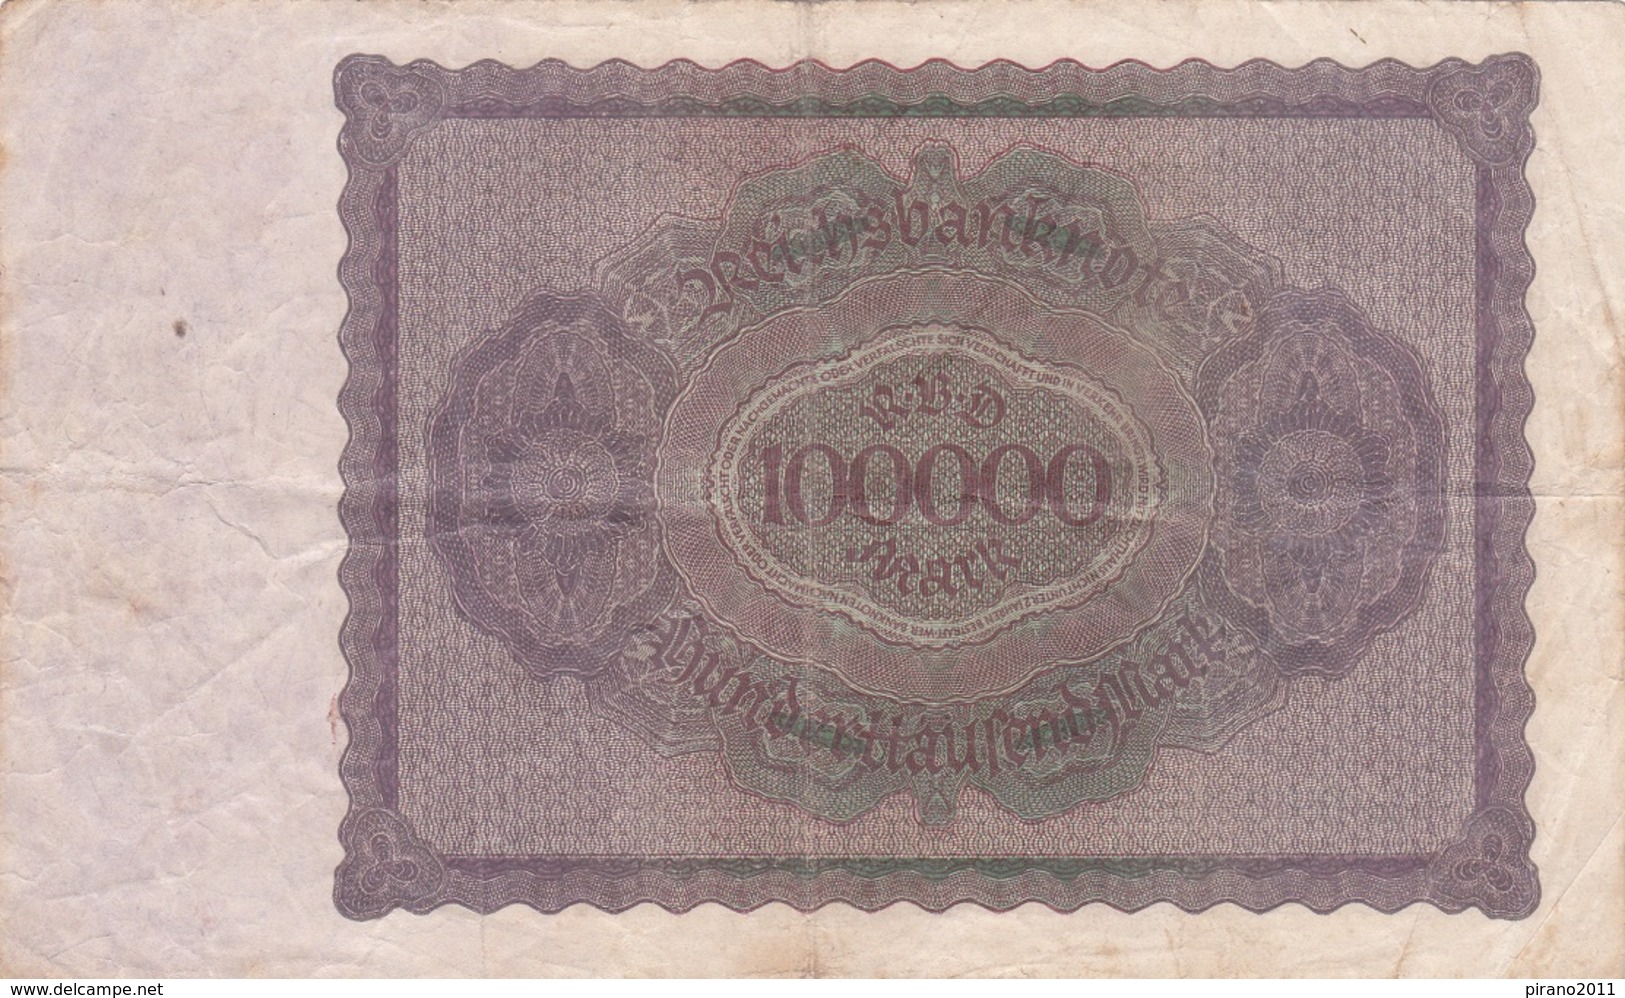 Reichsbanknote; Hunderttausend Mark - 100000 Mark